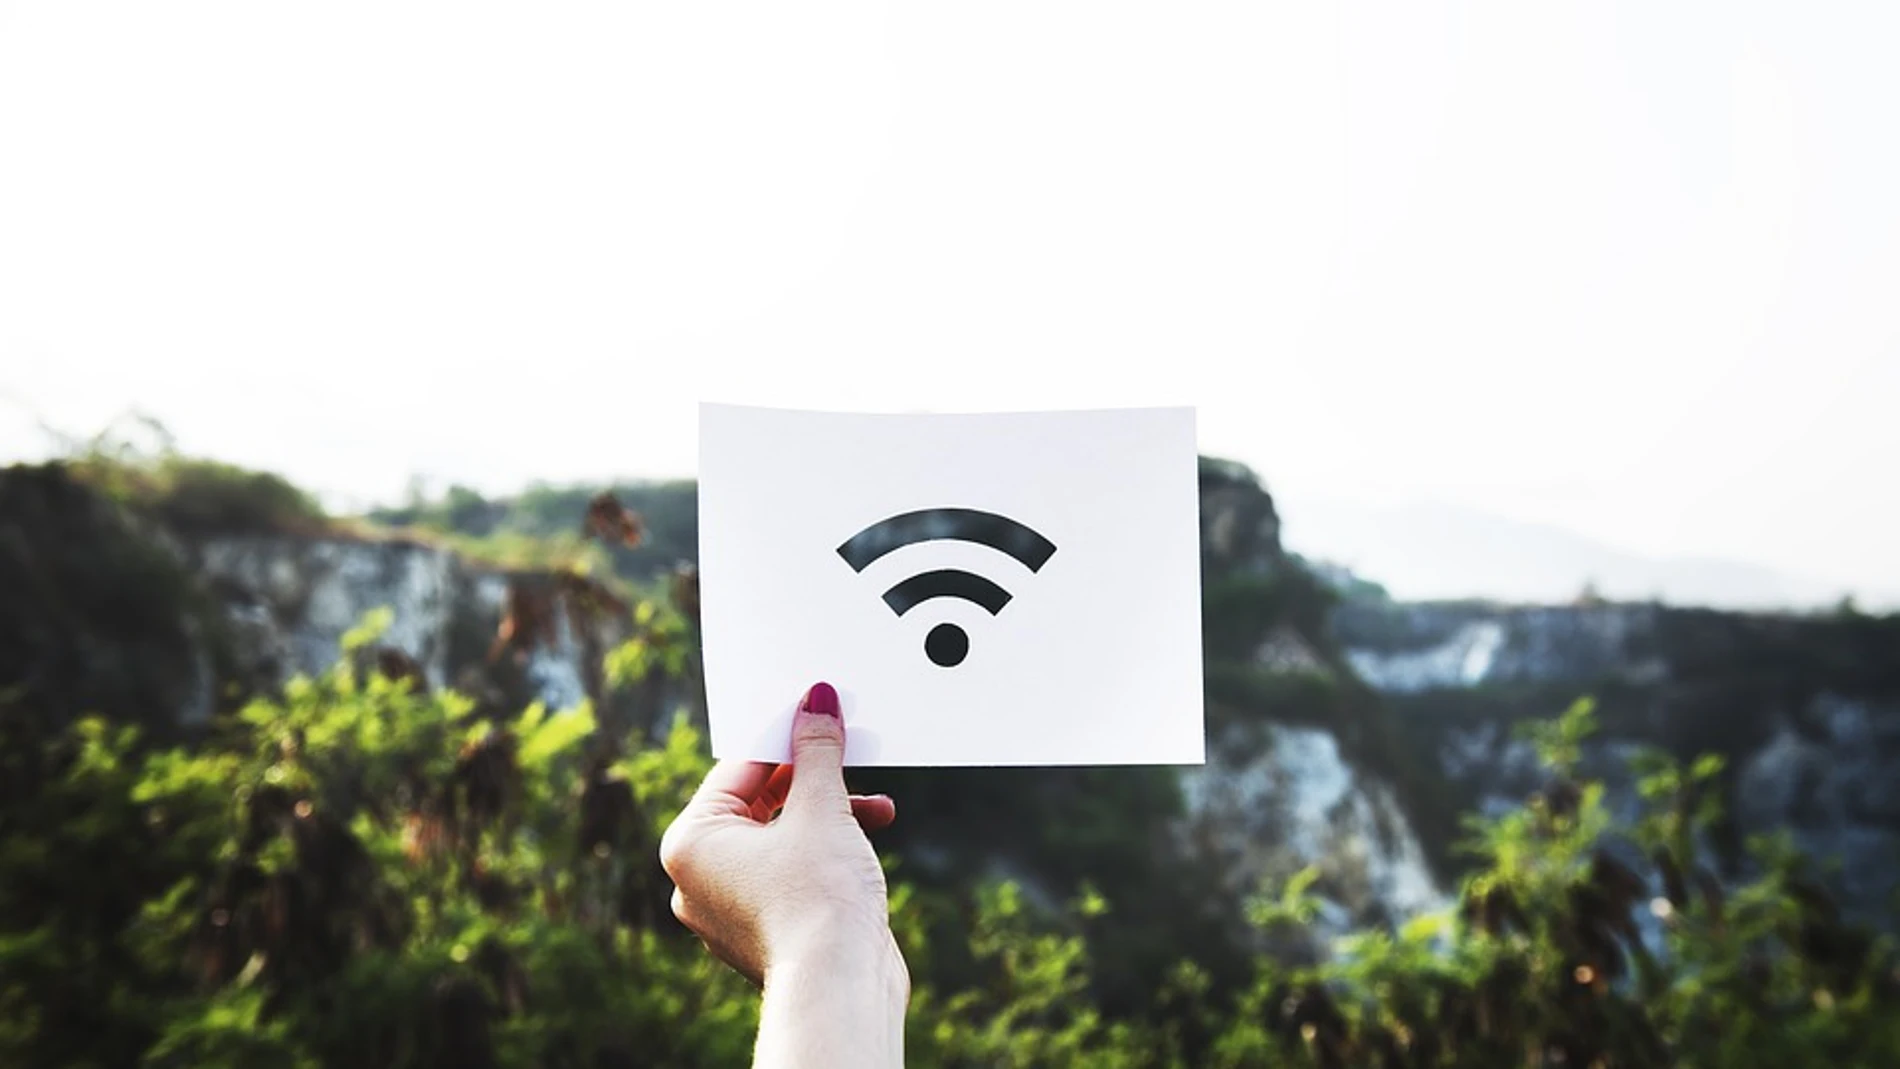 Estar conectados a internet se ha convertido en una obsesión para muchos / Pixabay